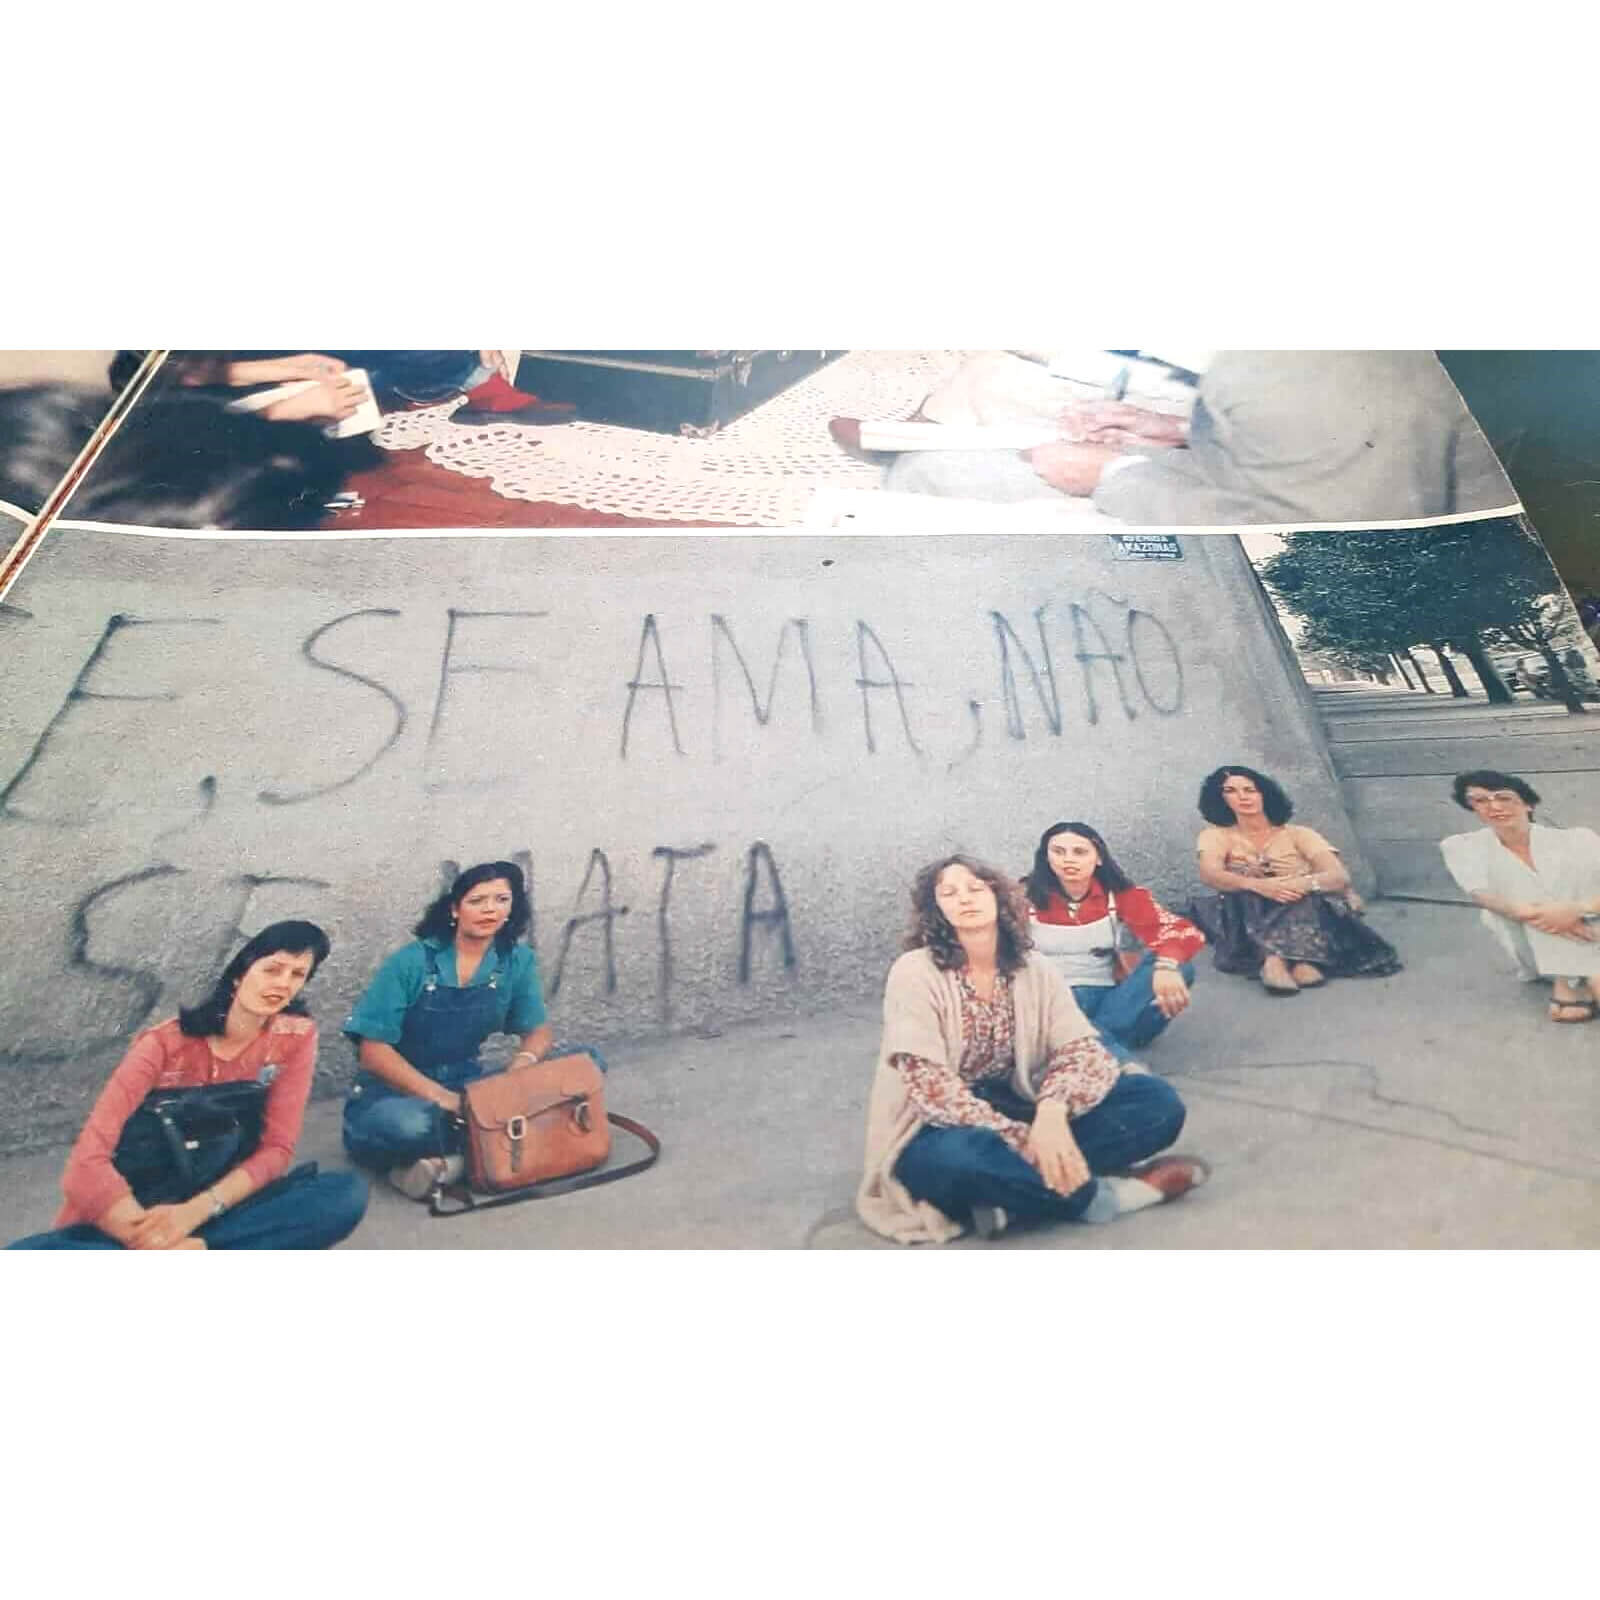 Foto de Nelson Aranha/Manchete mostra as mineiras na pichação que inspira de seu slogan. Celina Albano (macacão jeans e blusa azul) e a loira Mirian Chrystus (casaco claro e raros cabelos longos)